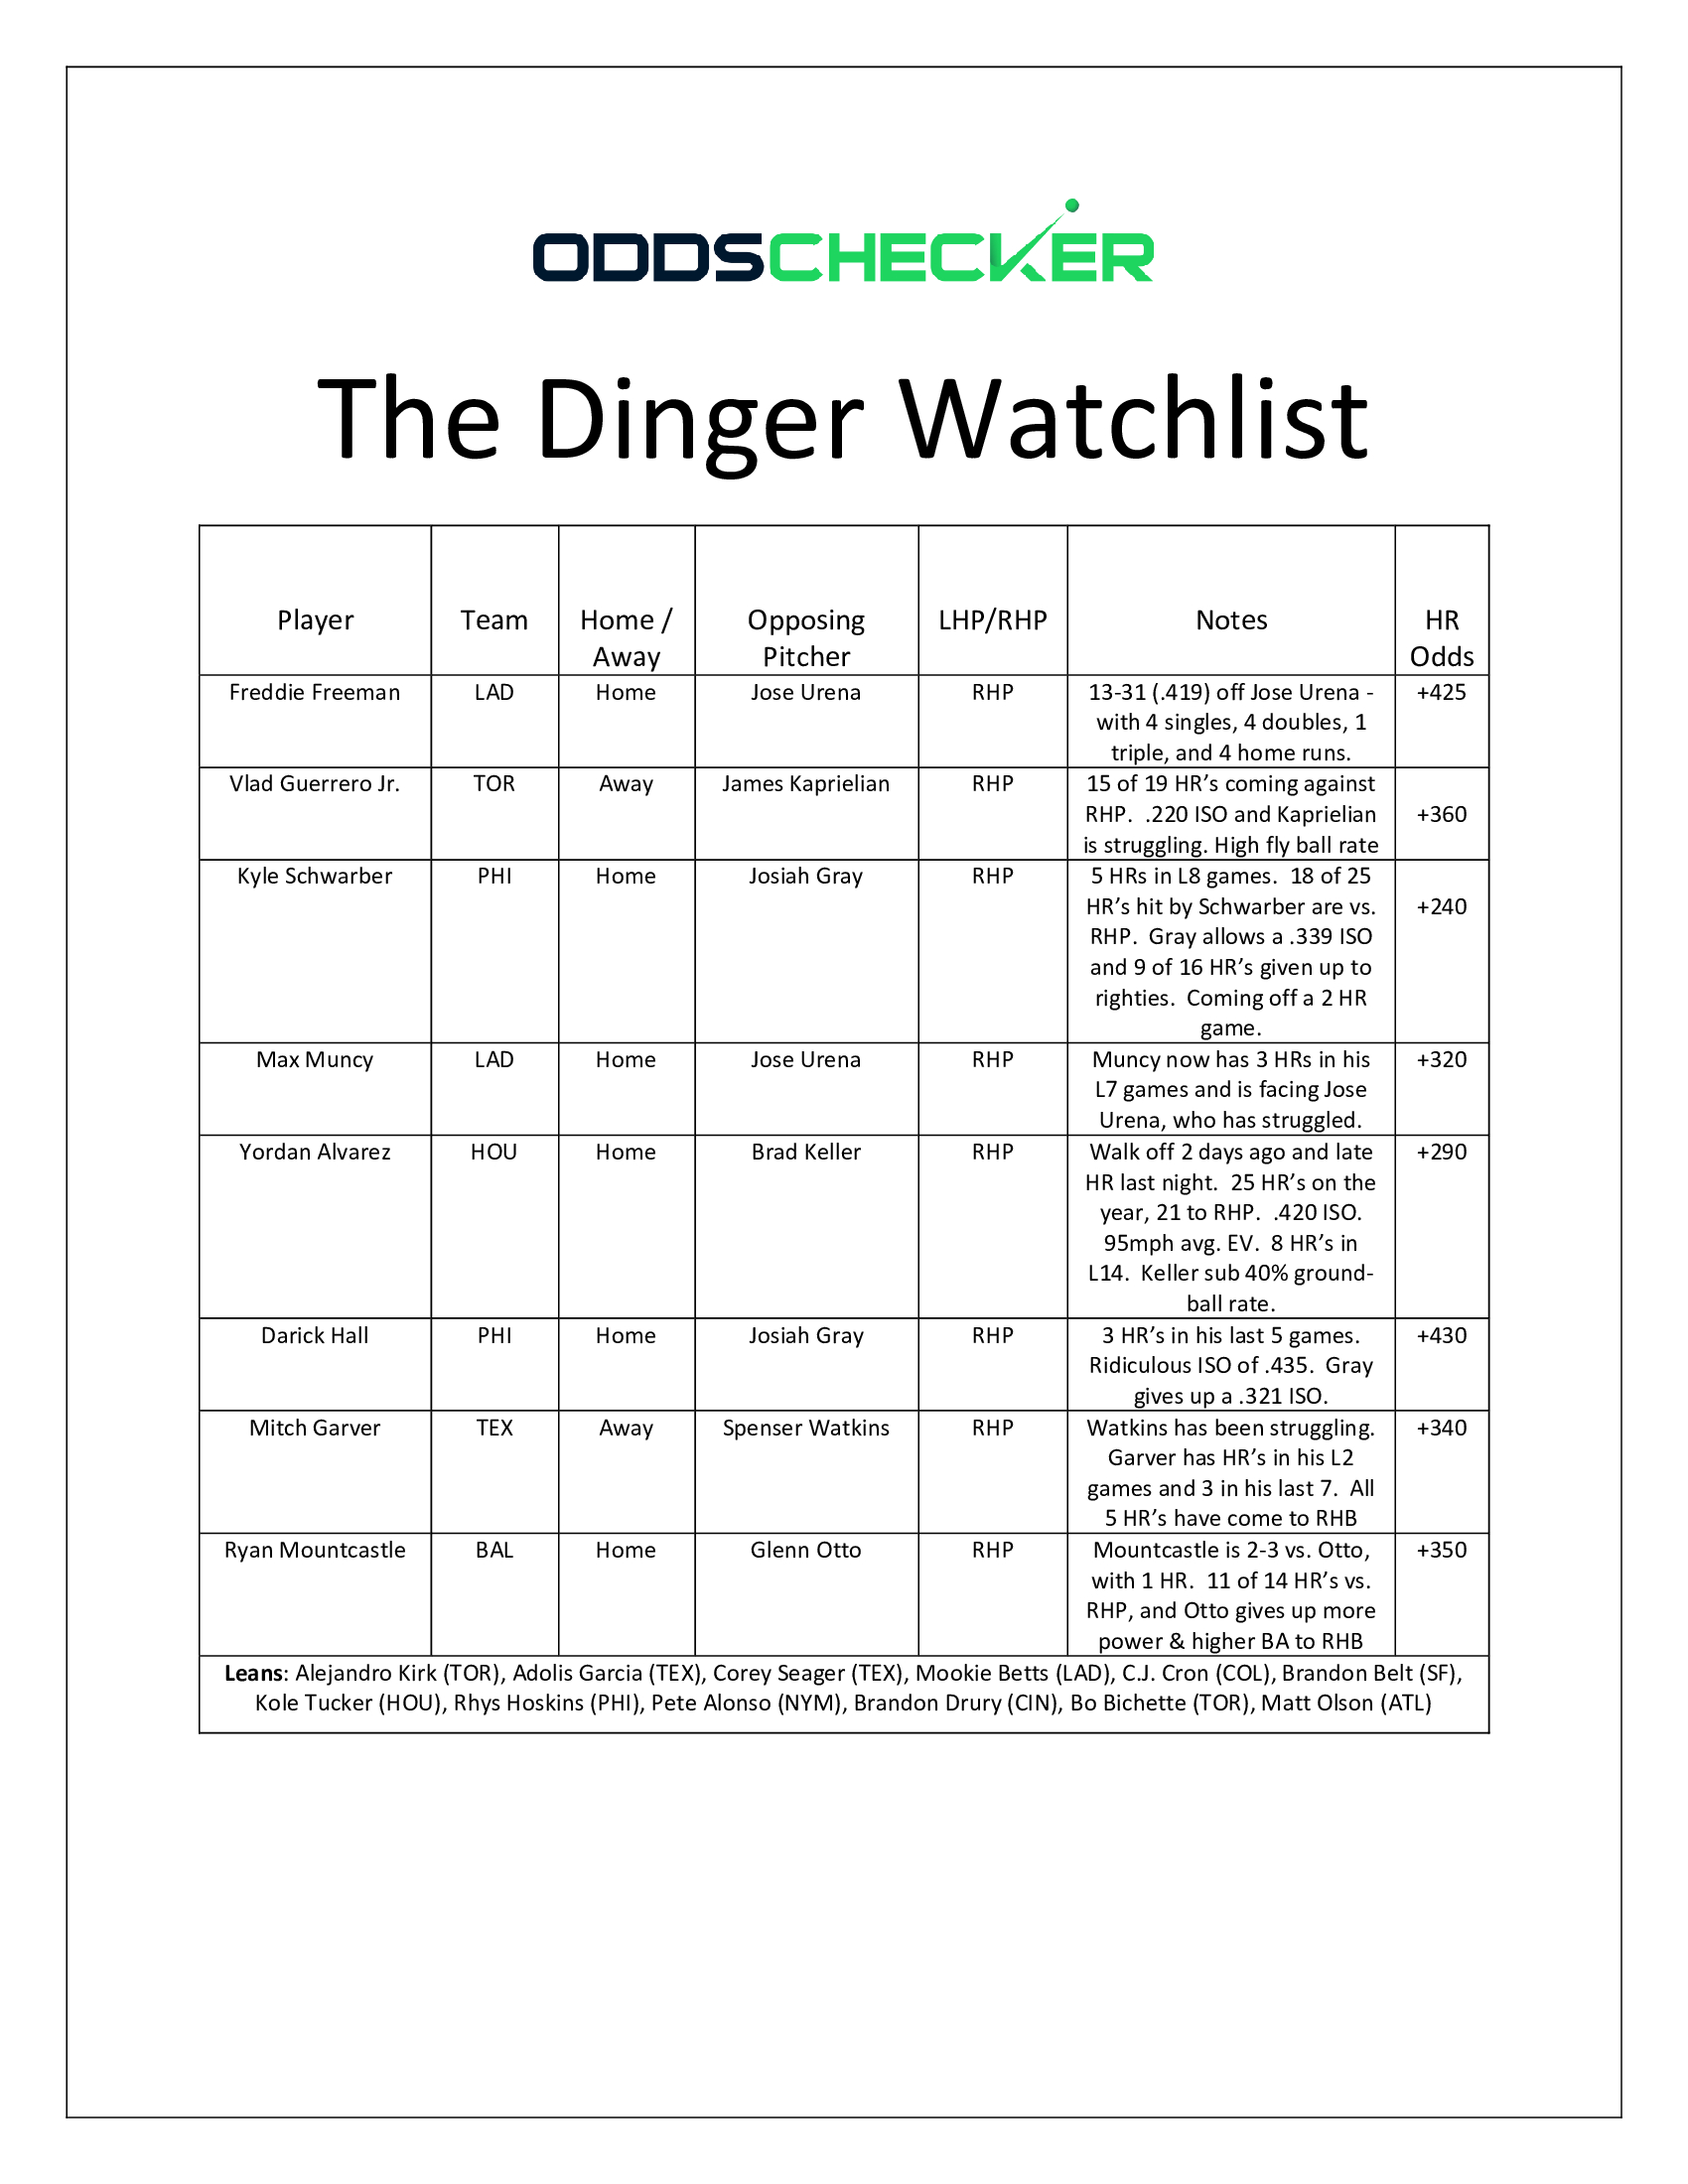 Dinger Watchlist - 7.6